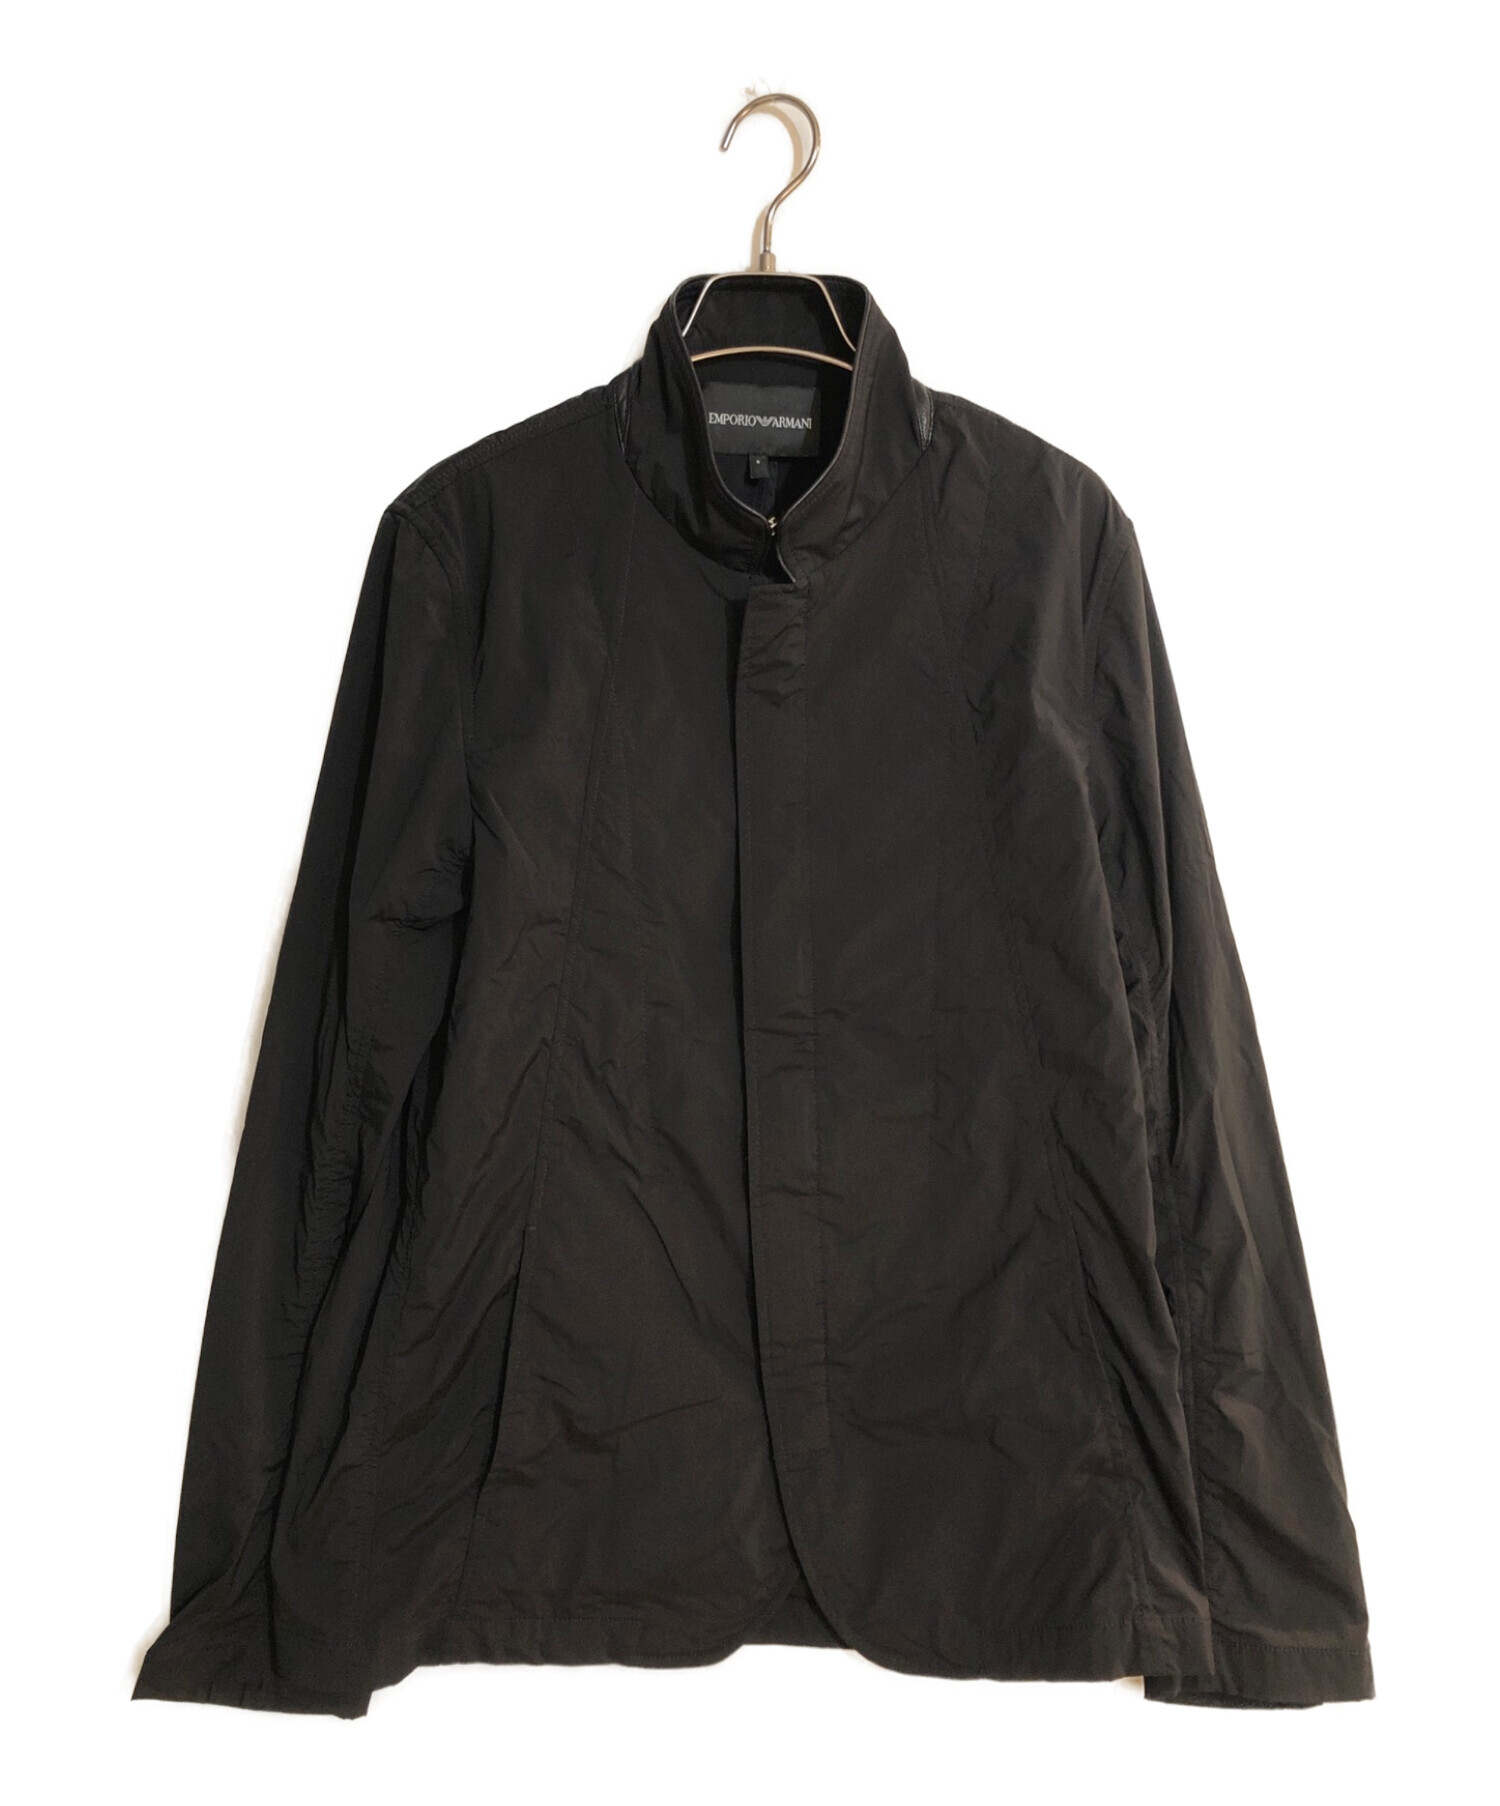 EMPORIO ARMANI (エンポリオアルマーニ) ナイロンジャケット ブラック サイズ:S